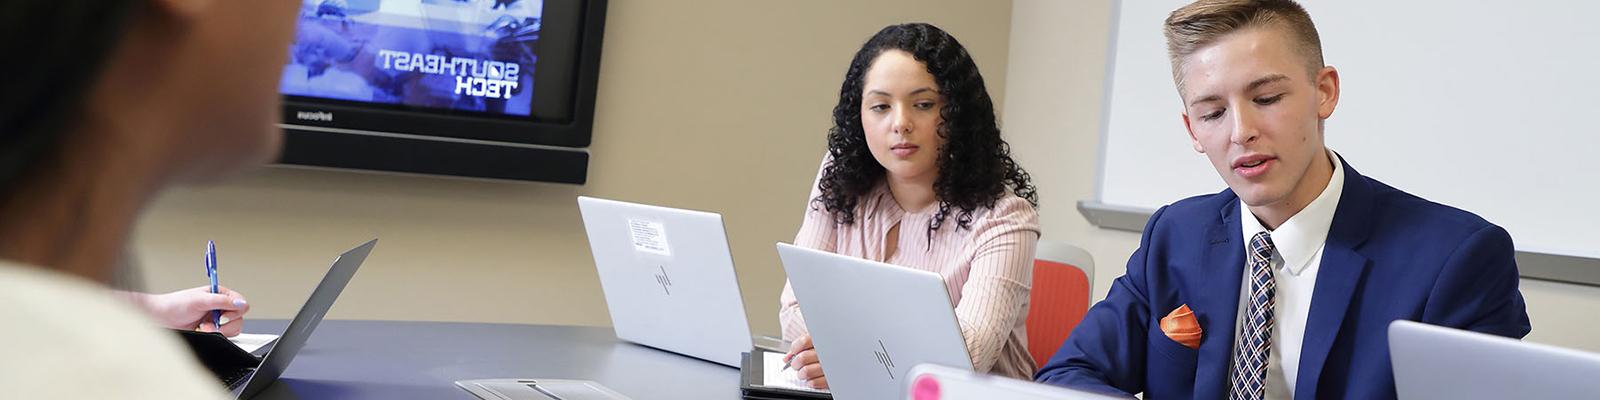 穿着商务服装的学生在会议室的桌子上工作. 东南科技的图像显示在屏幕上.